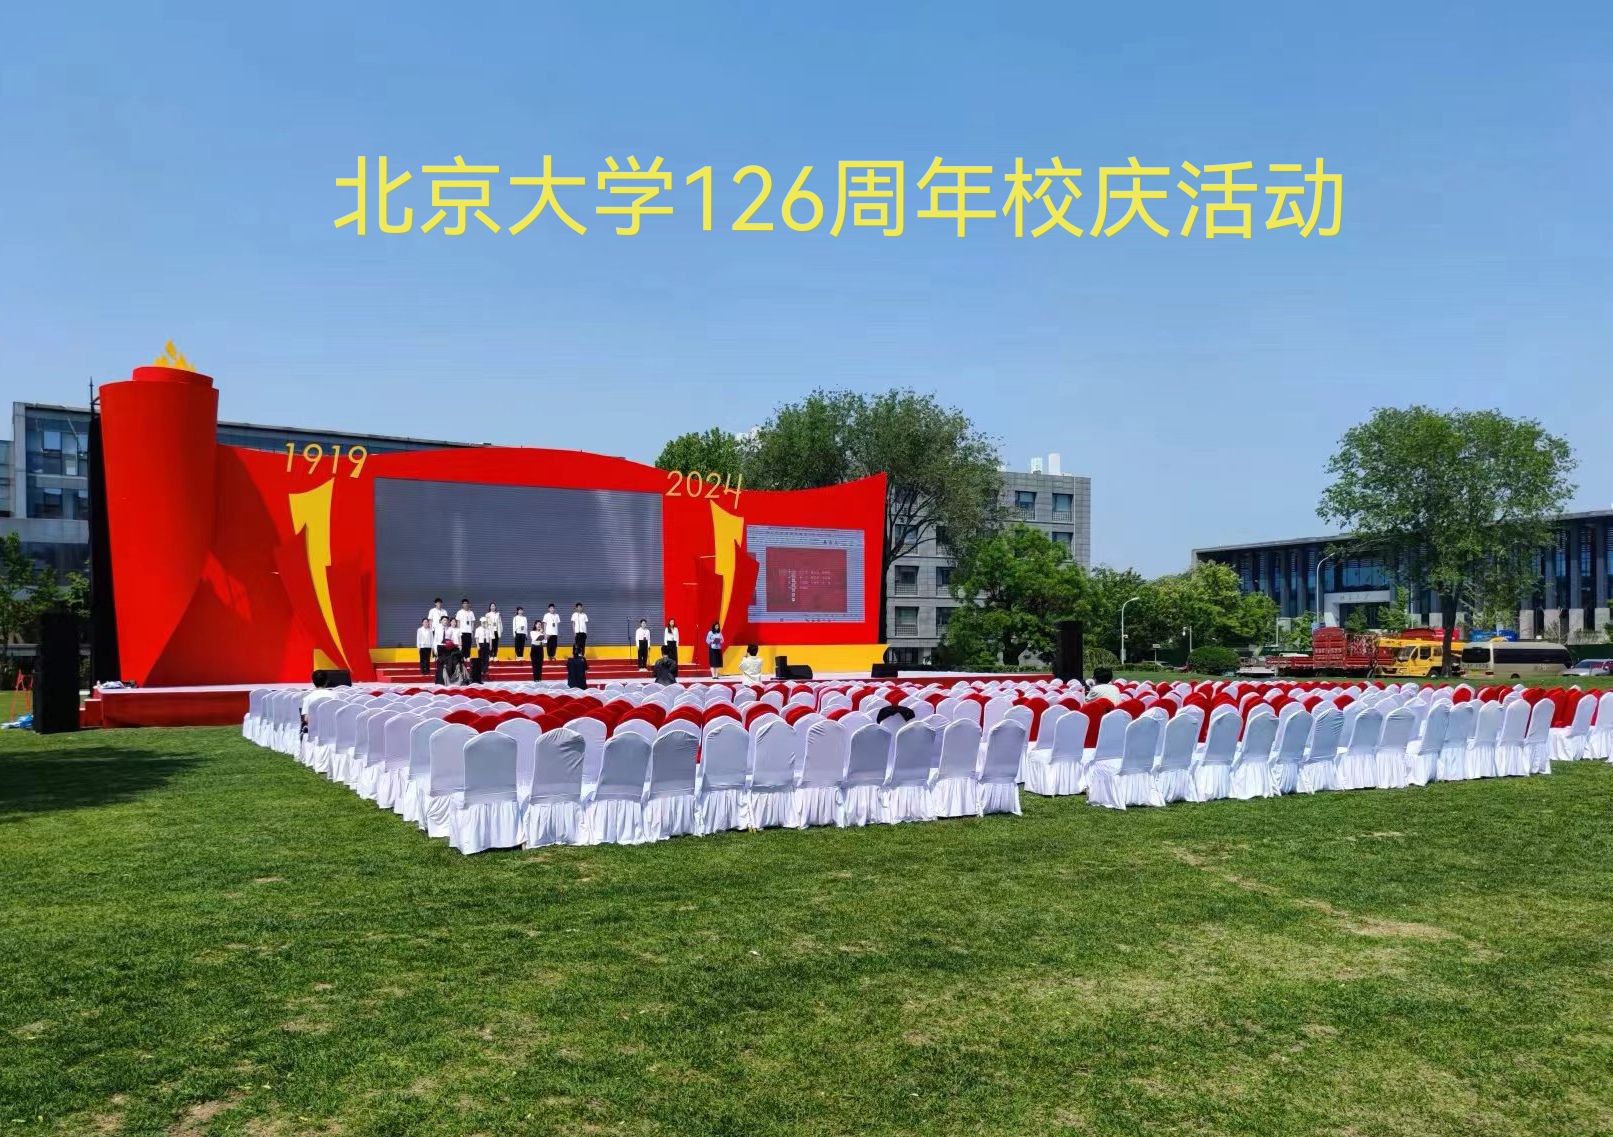 北京大学126周年校庆活动